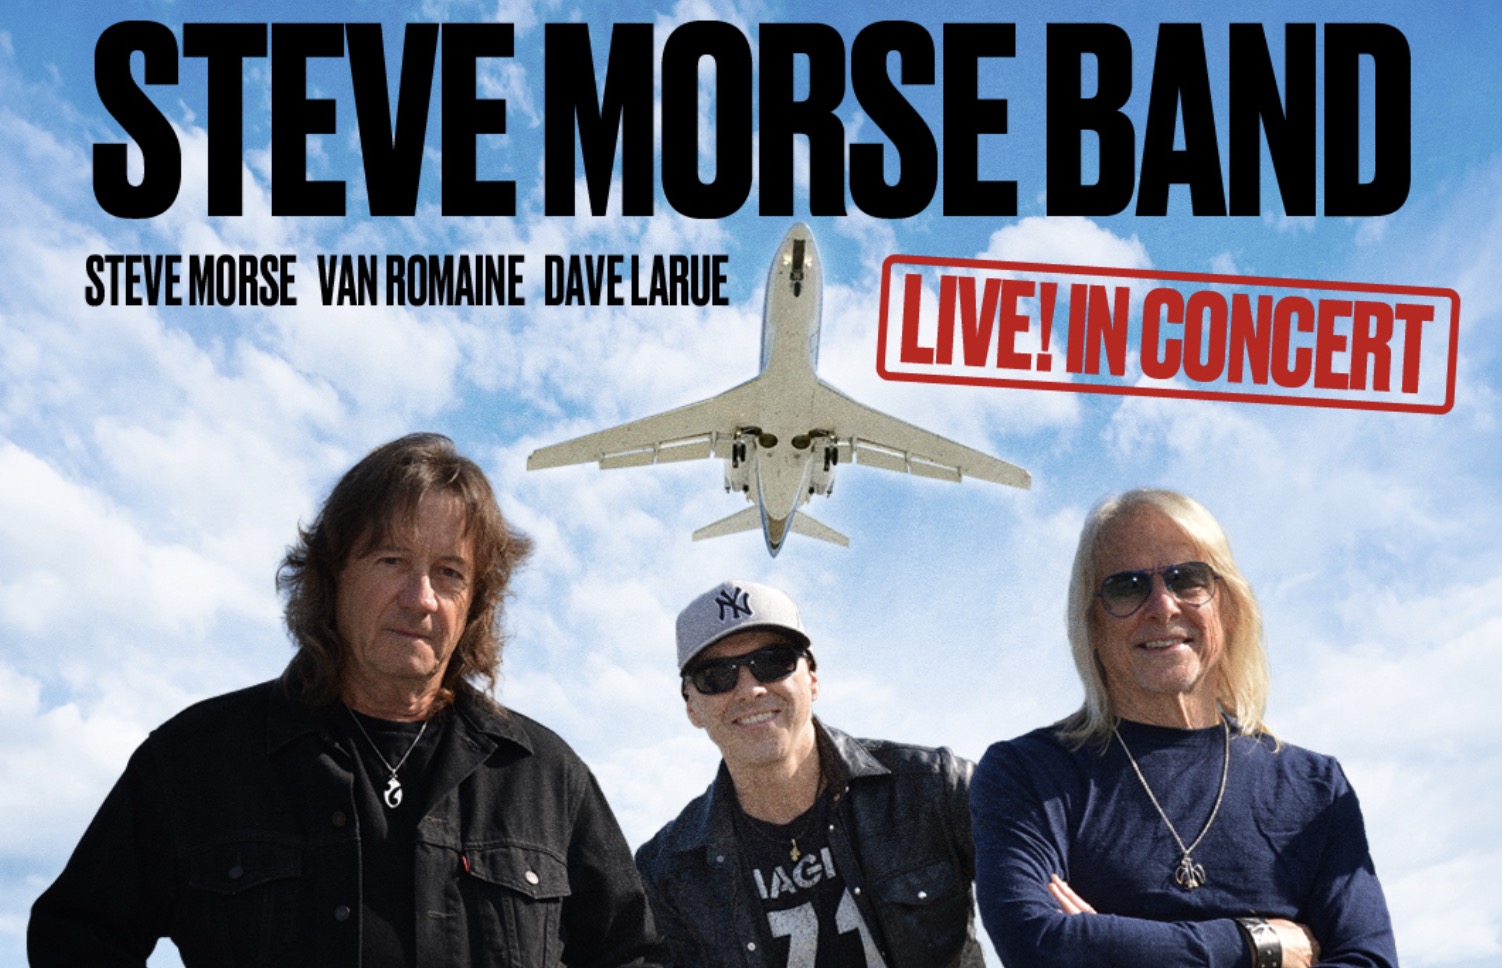 Steve Morse Band announces new tour dates The Prog Report